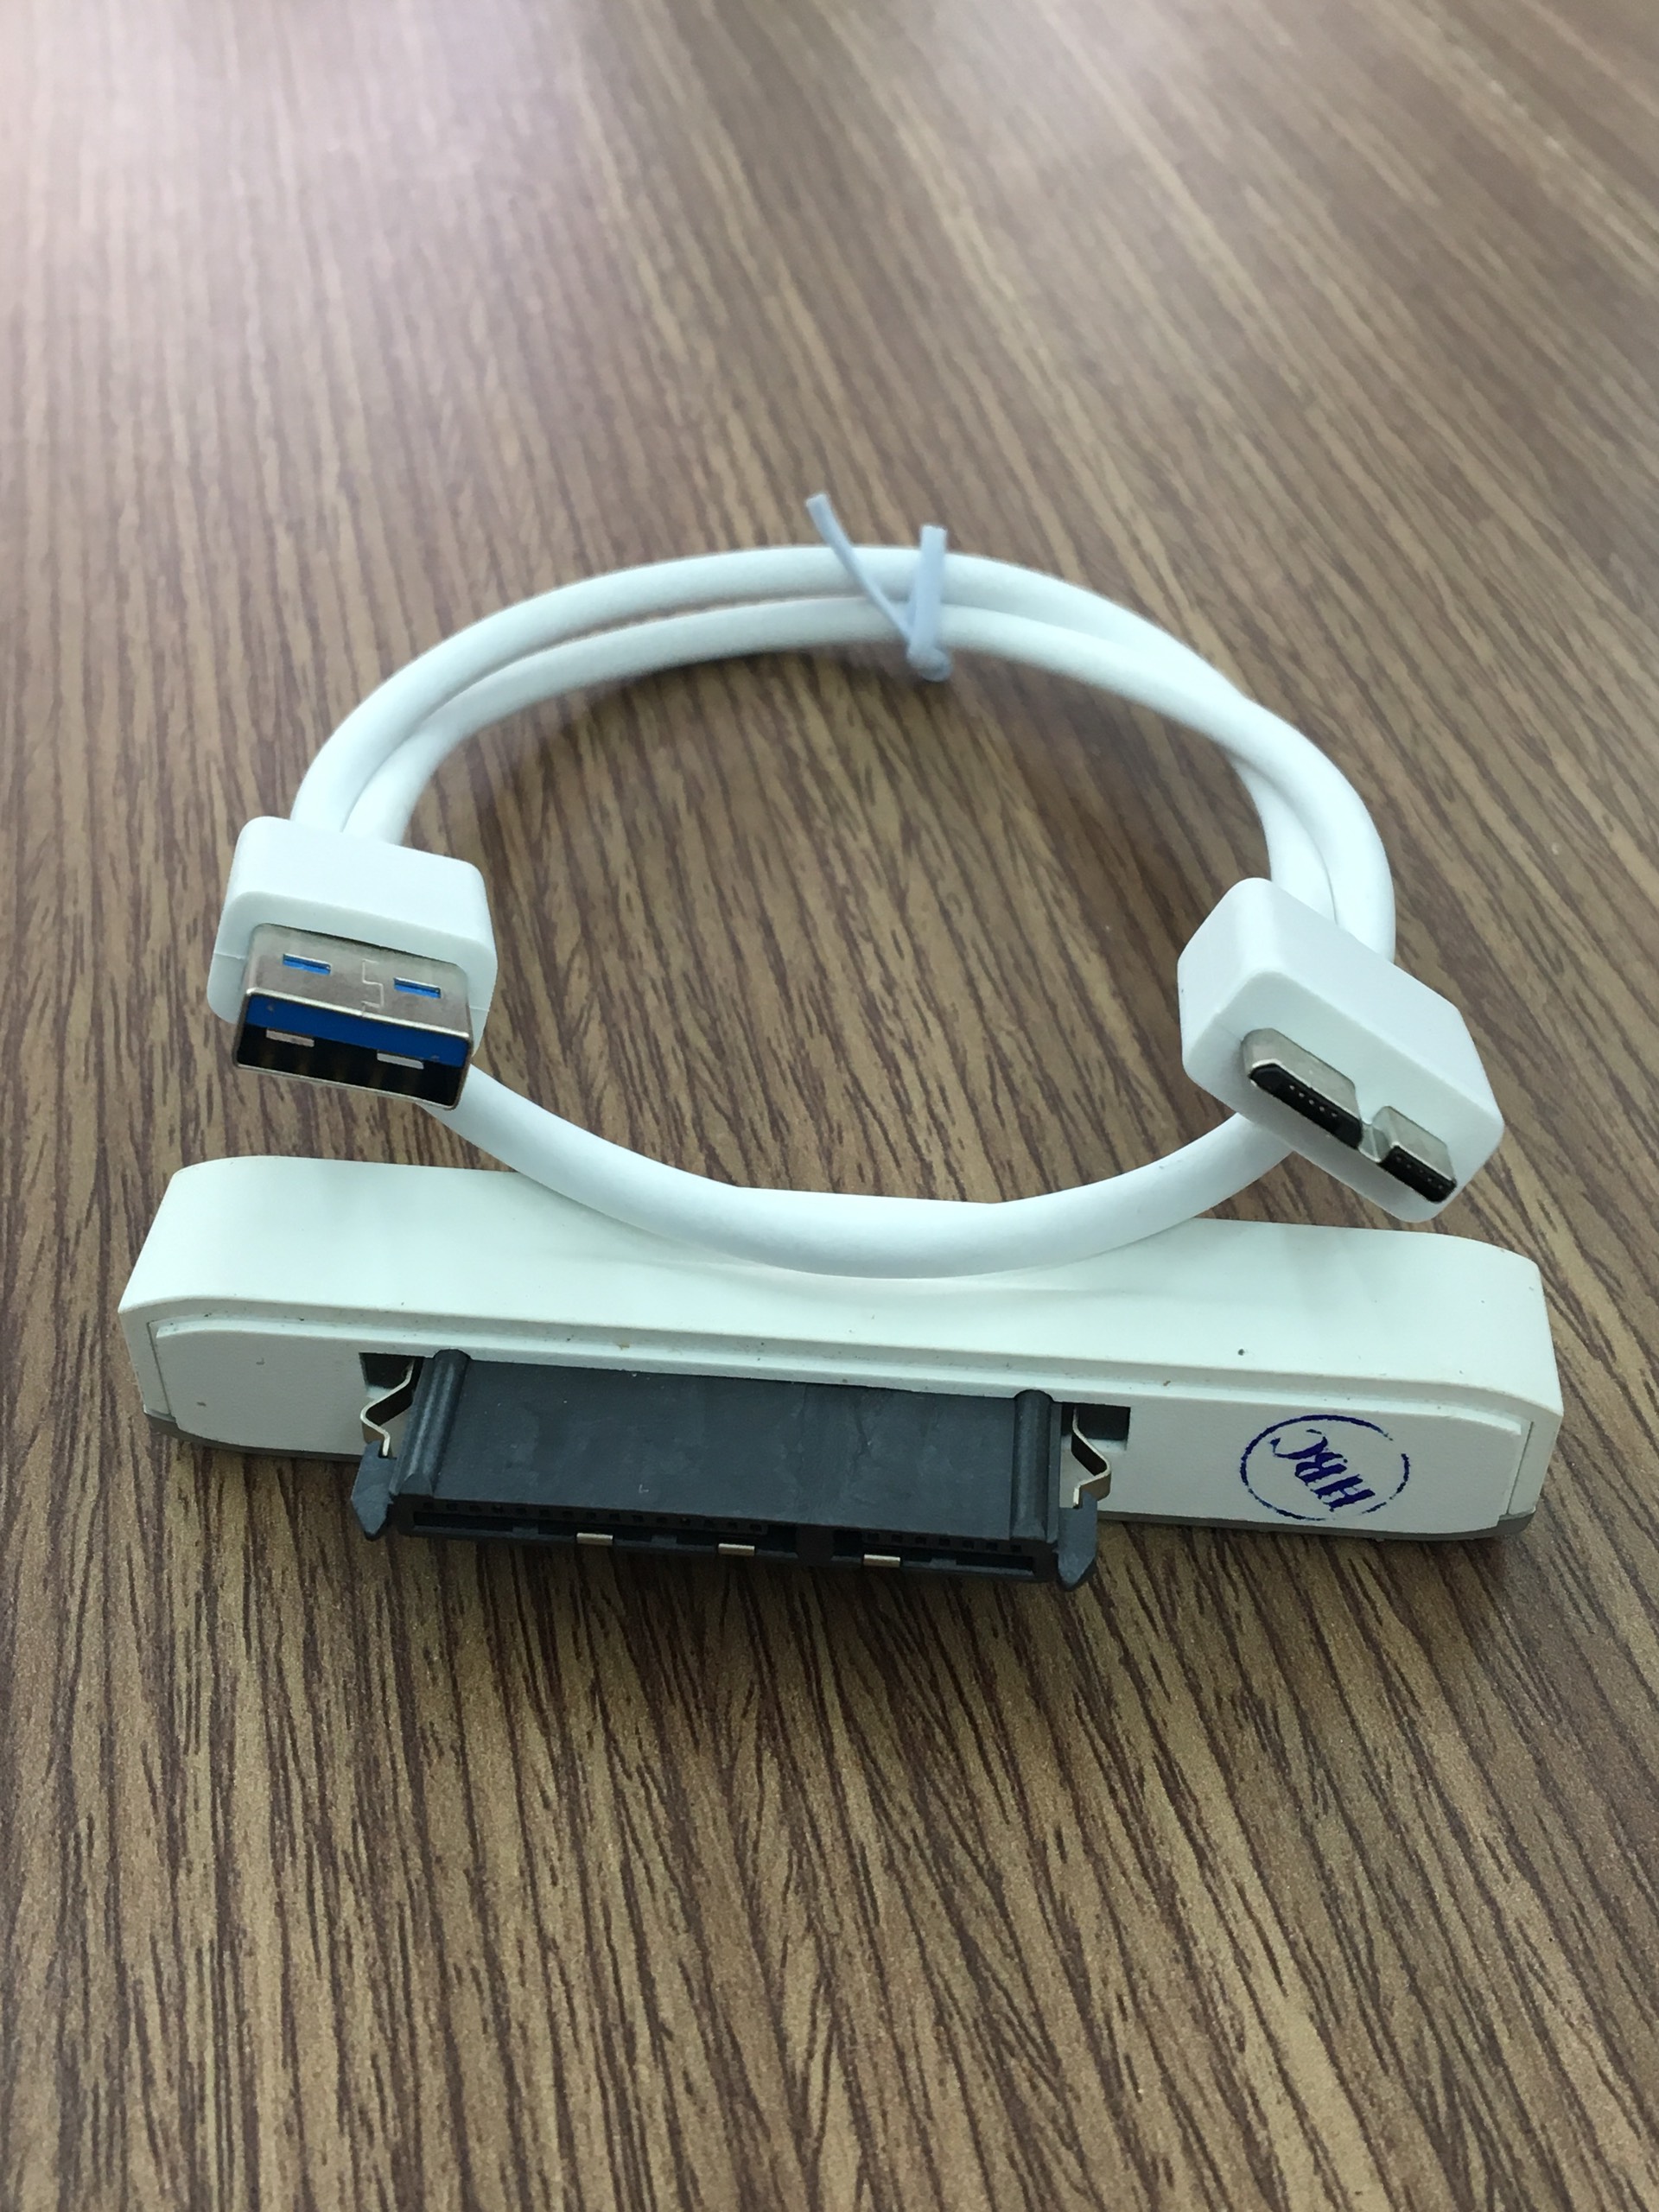 HDD Box USB 3.0/Dock Ổ Cứng - Cáp Ổ Cứng Di Động ( Màu ngẫu nhiên )